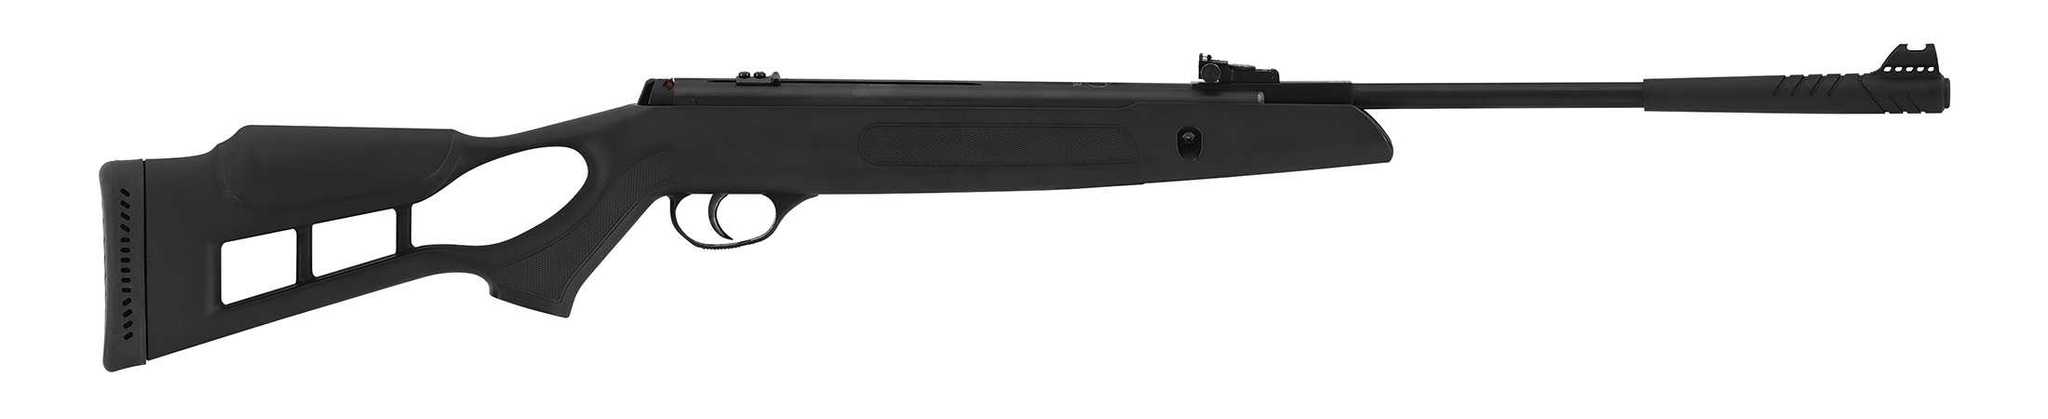 Пневматическая винтовка Hatsan Striker Edge (переломка, пластик) 4,5 мм - купить по выгодной цене | ORENGUN: Продажа оружия в Оренбурге